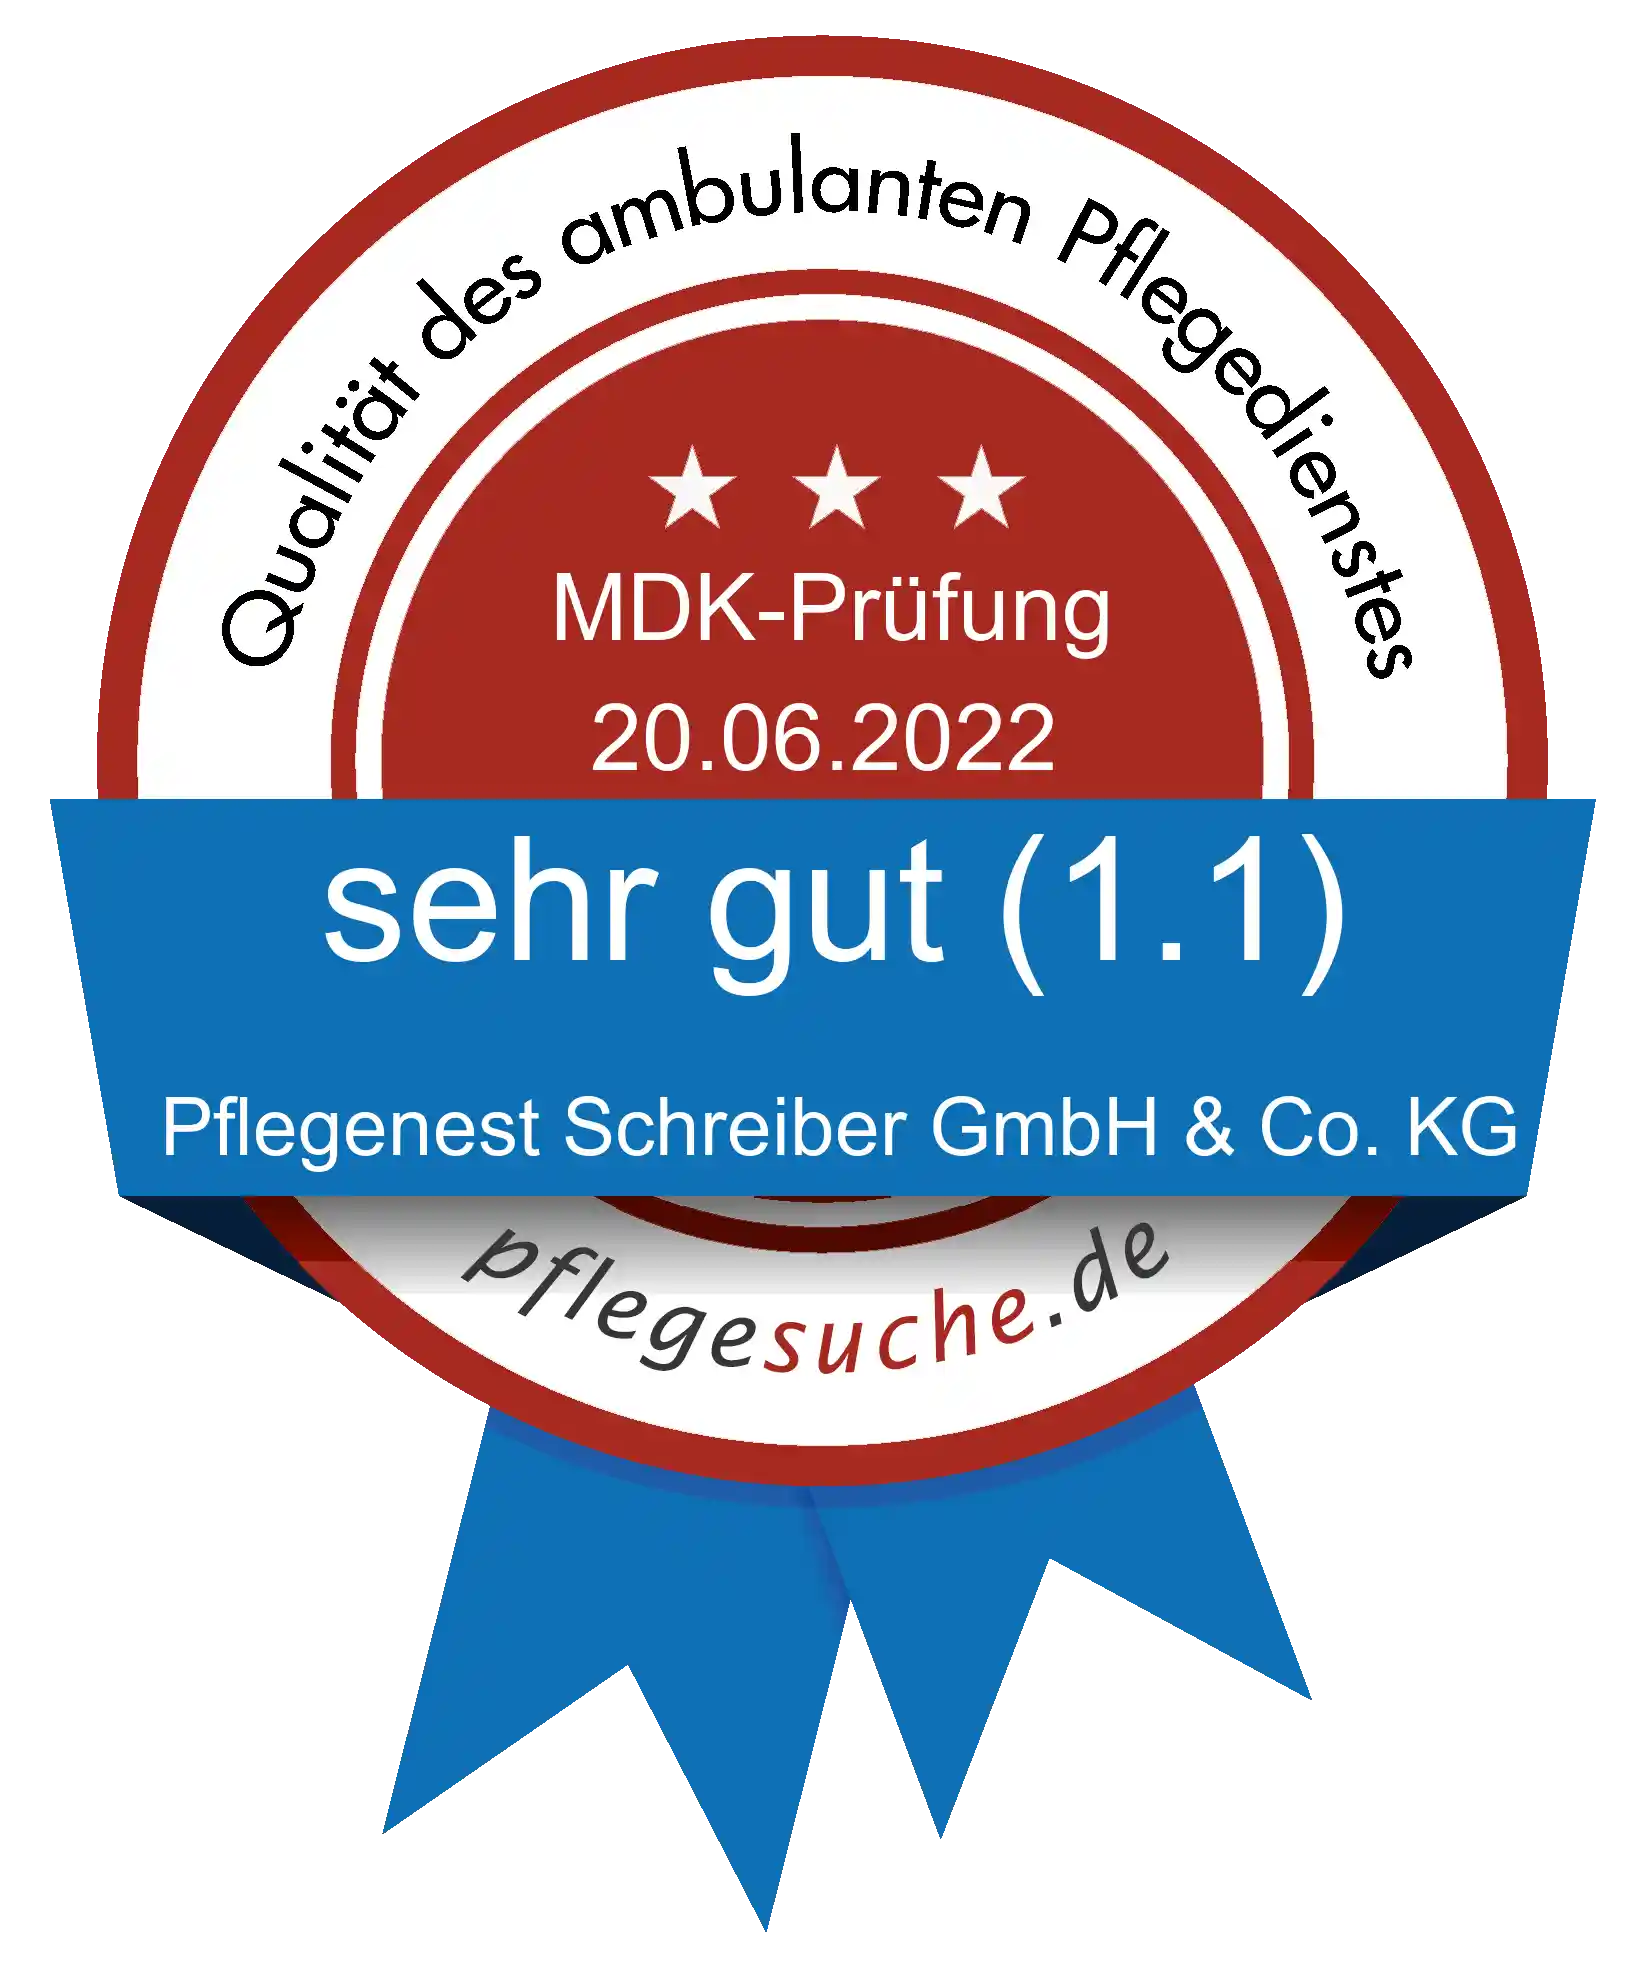 Siegel Benotung: Pflegenest Schreiber GmbH & Co. KG